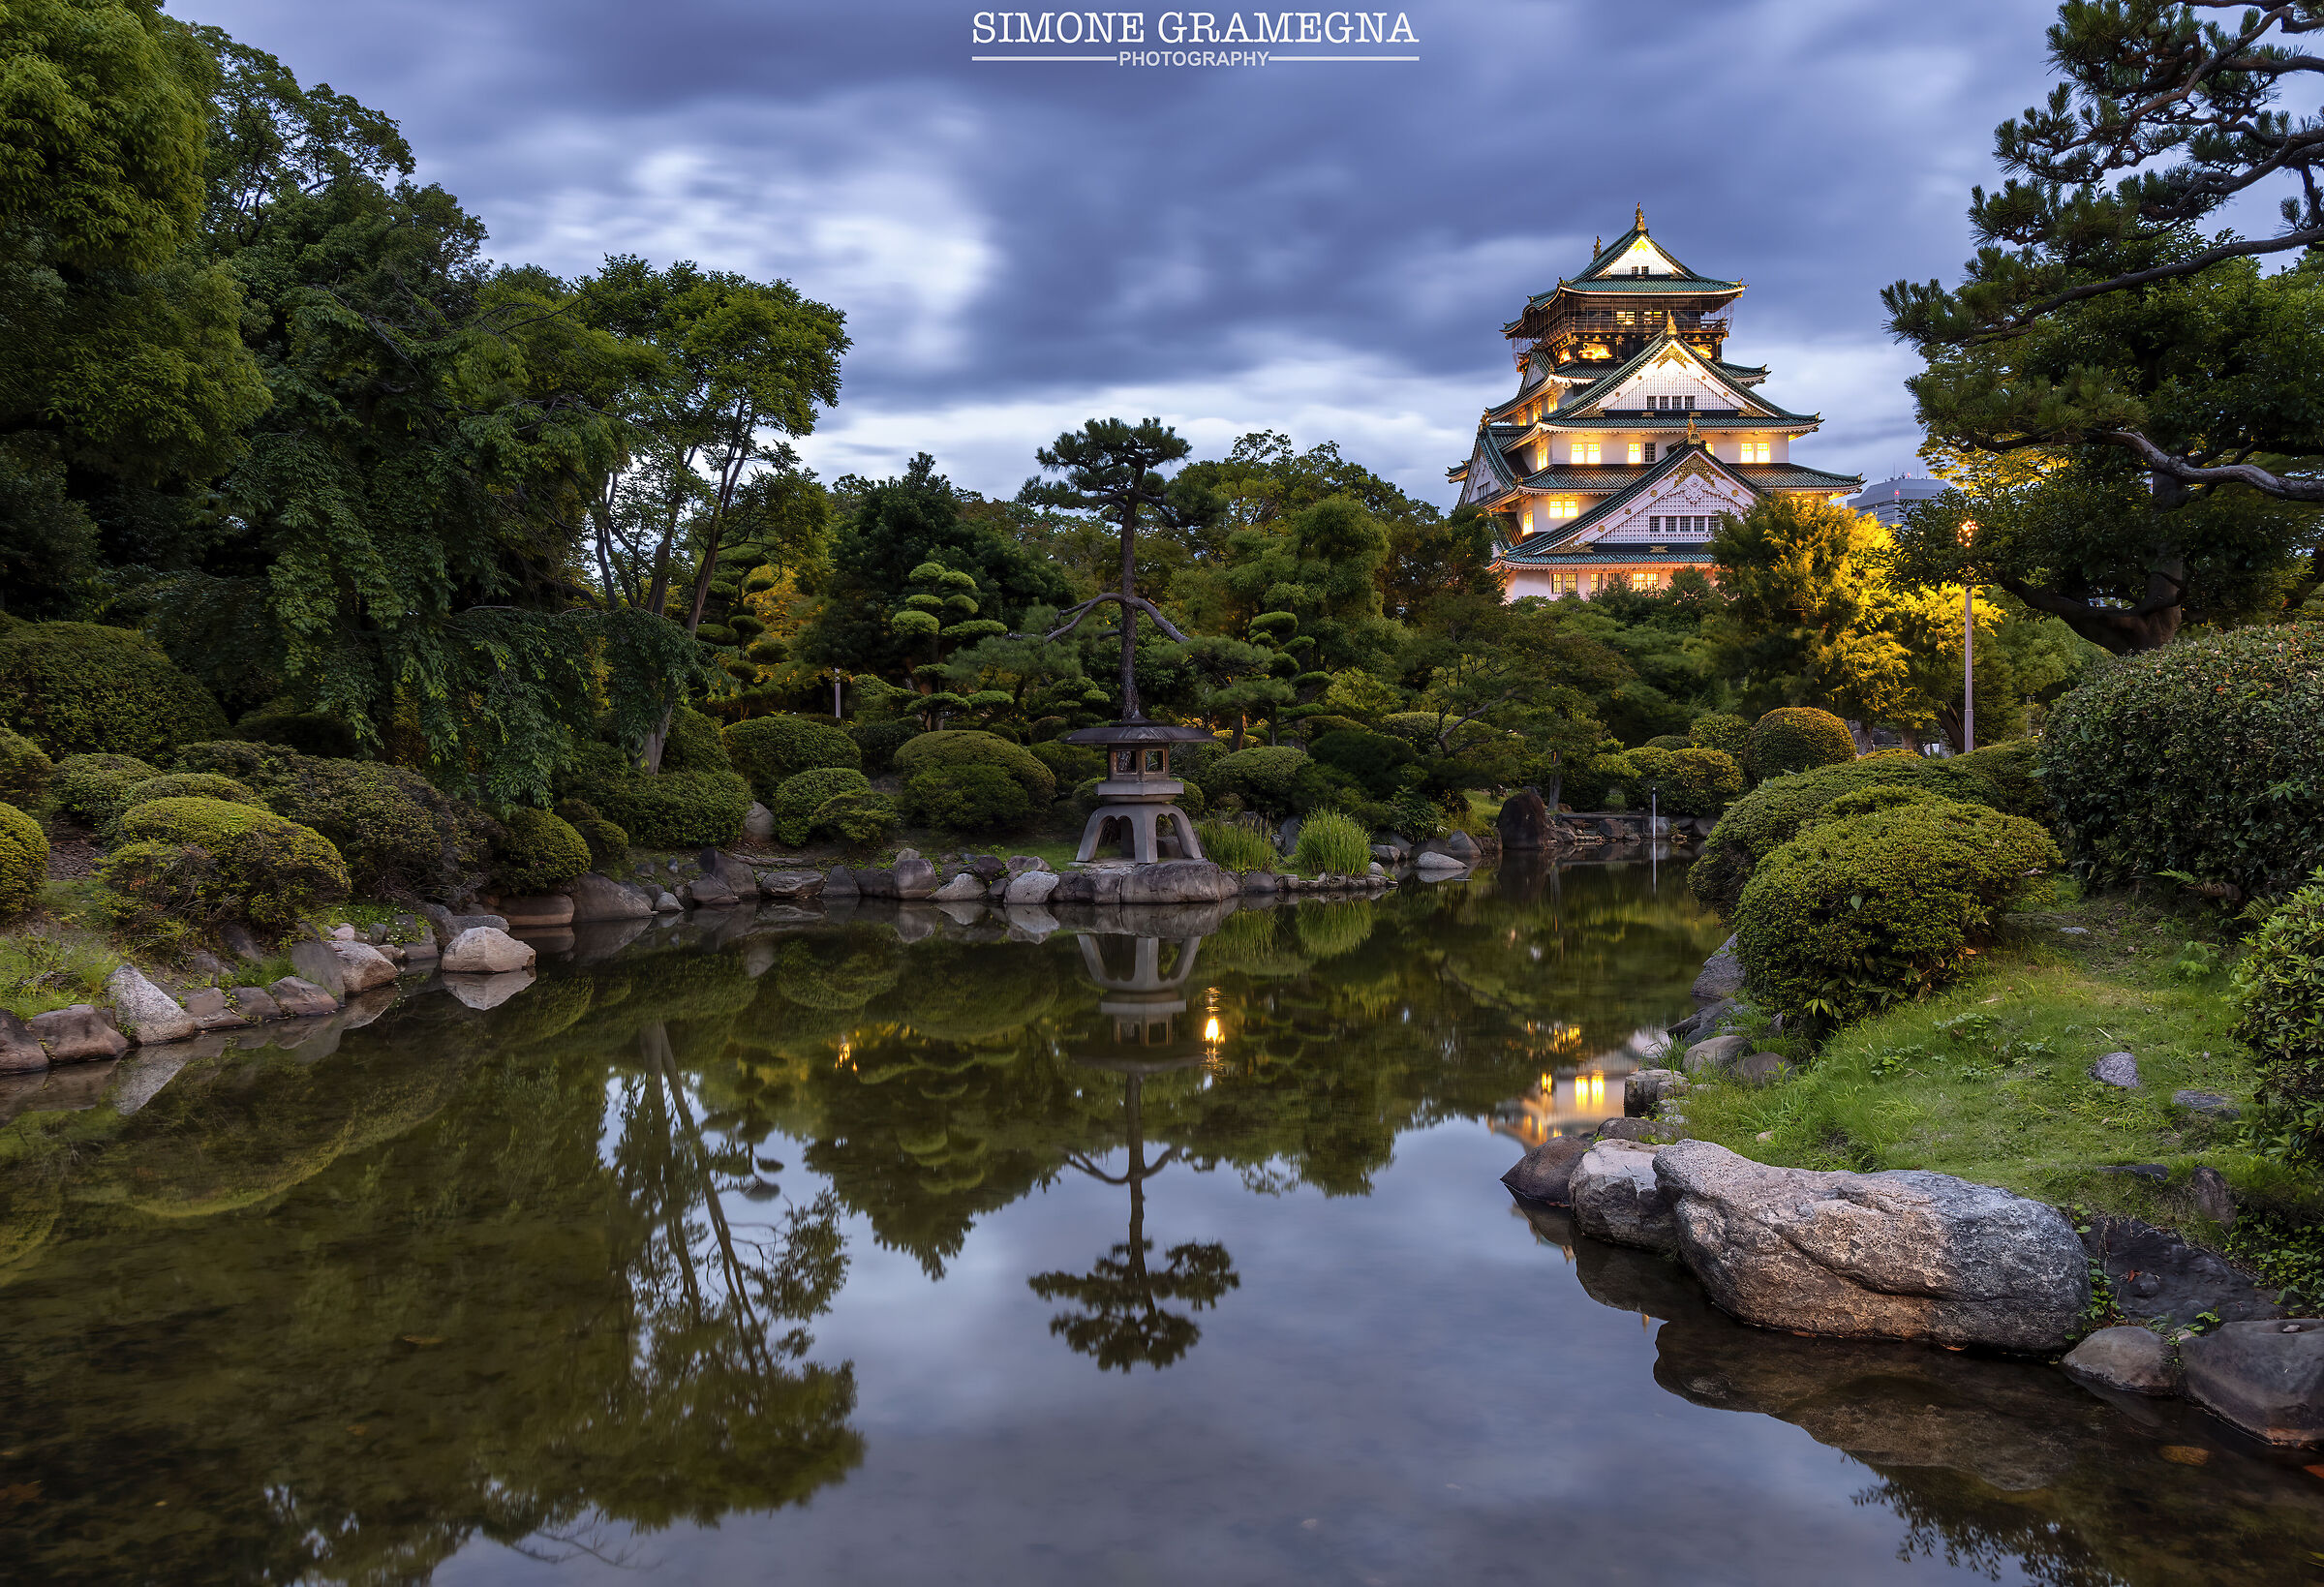 Il Castello di Osaka...